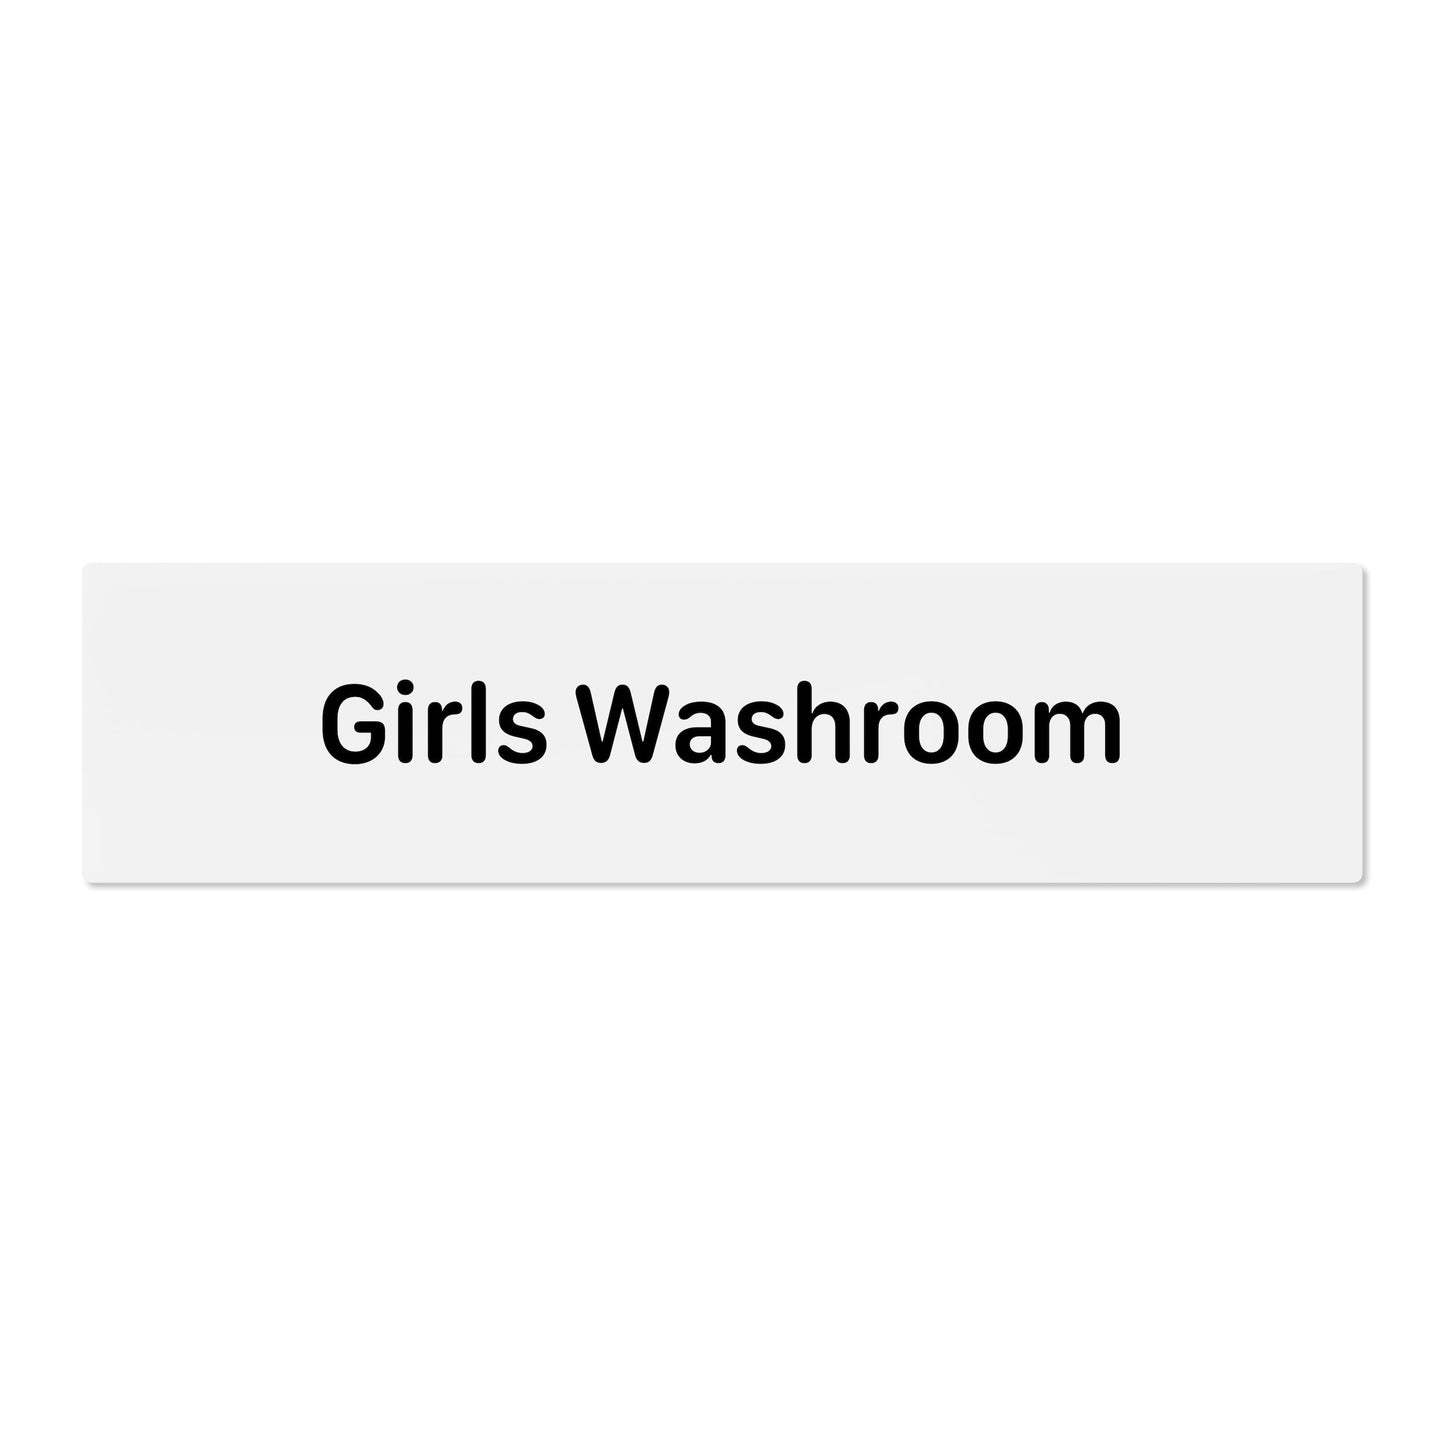 Girls Washroom